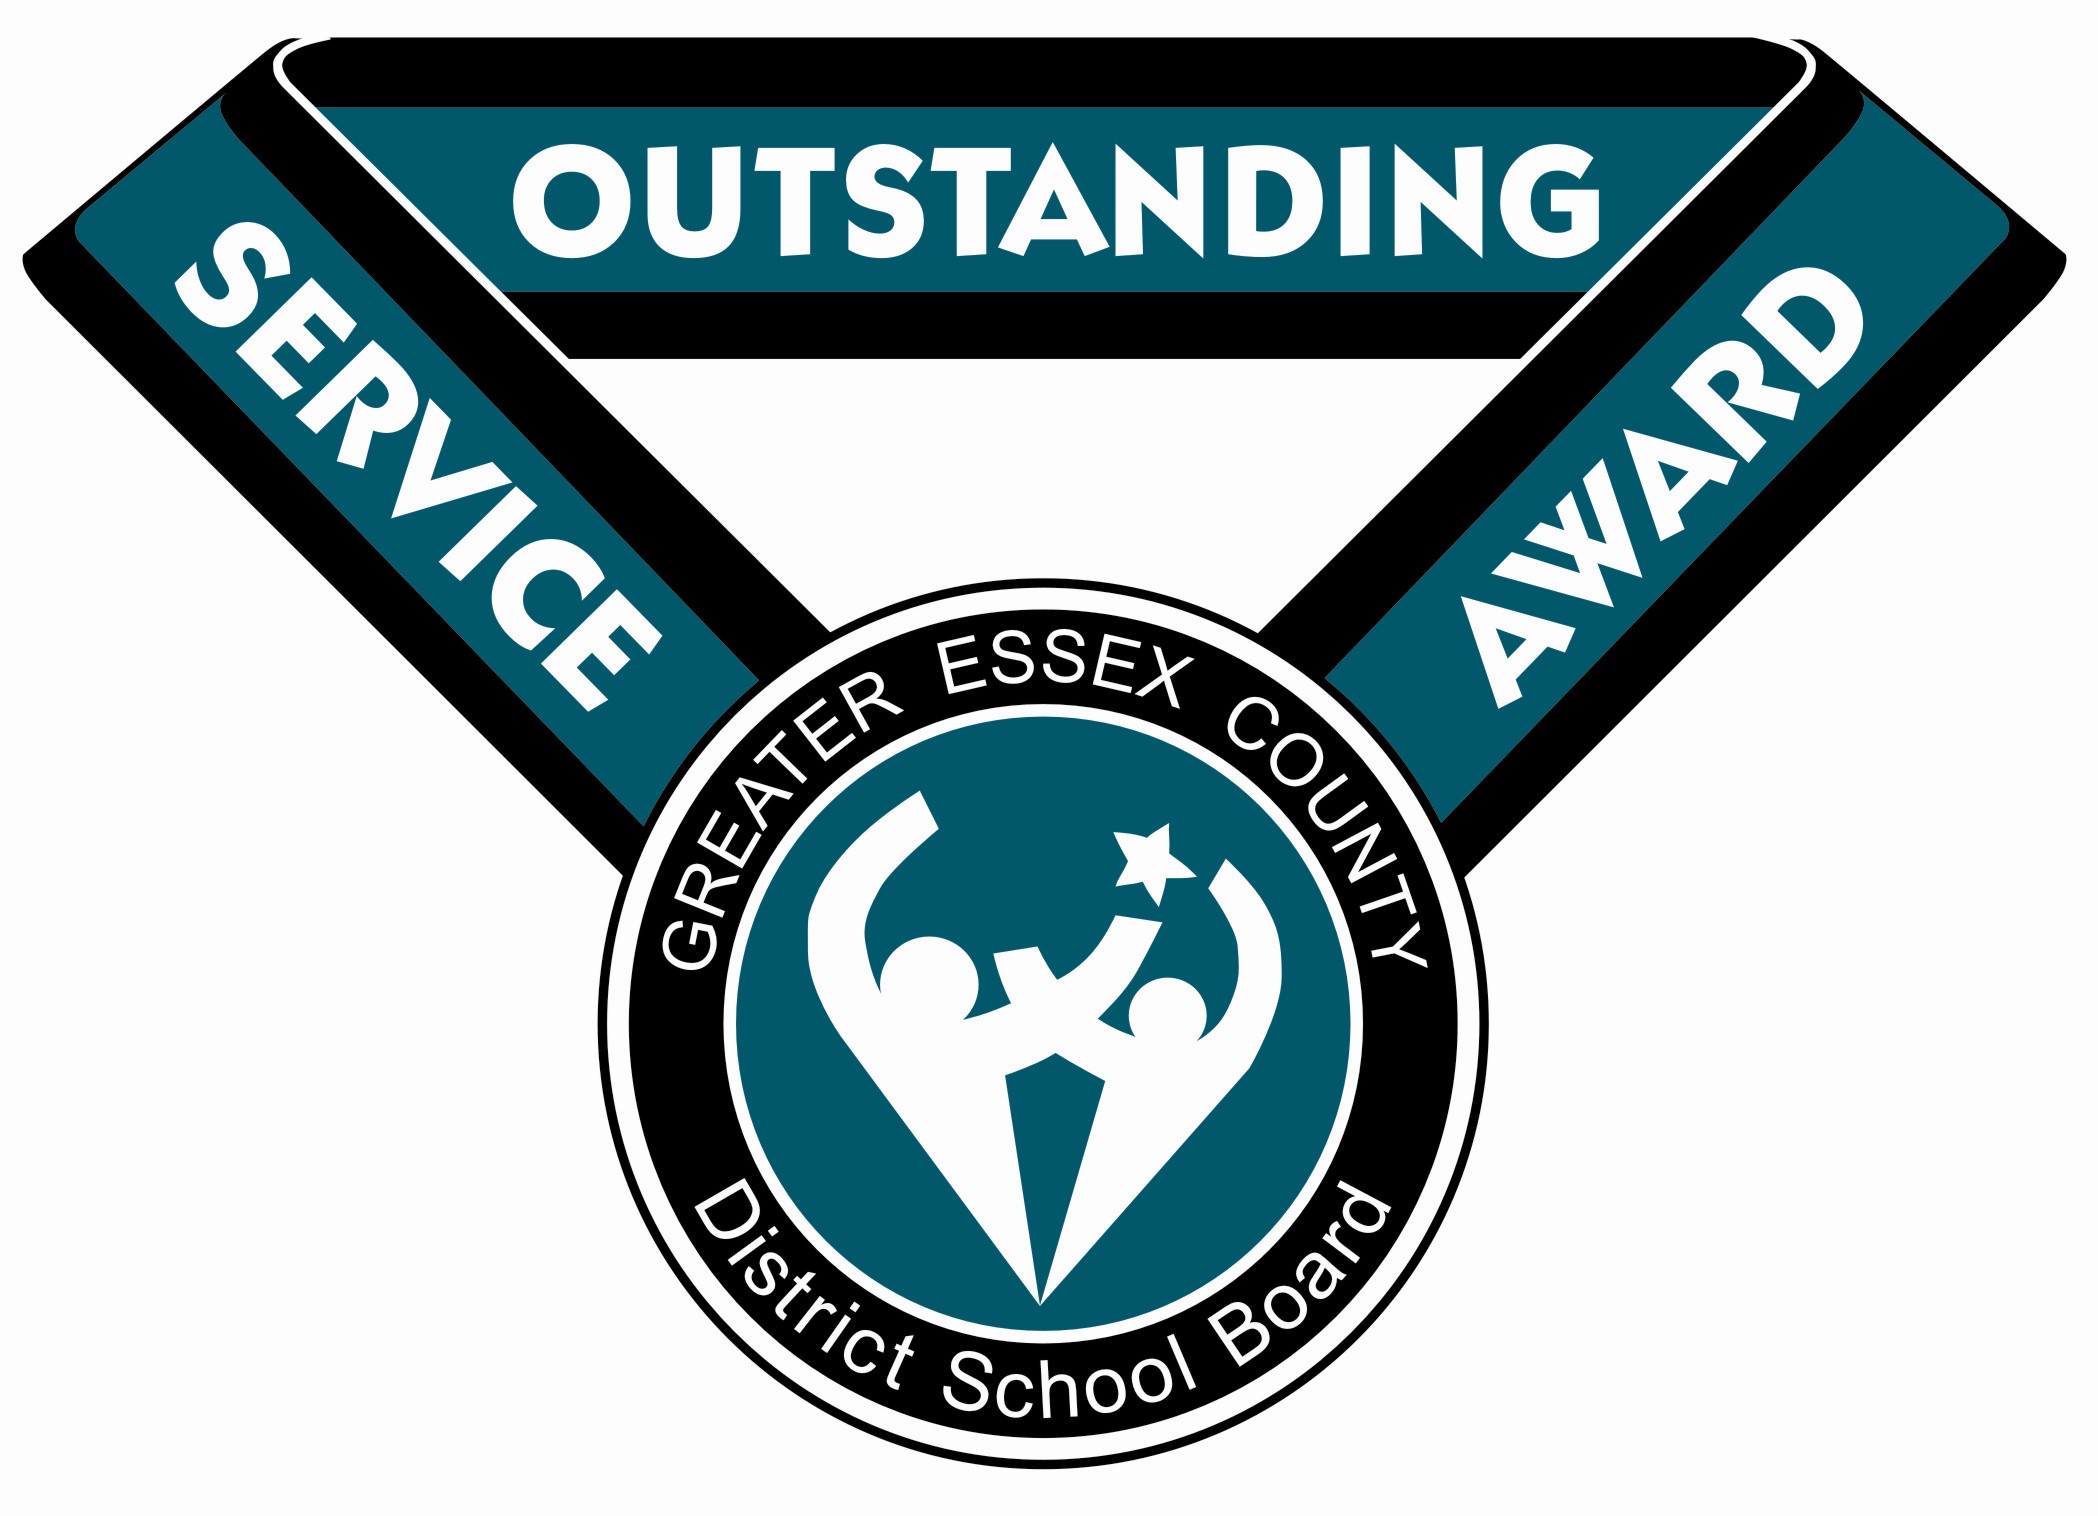 Outstanding Service Award Logo